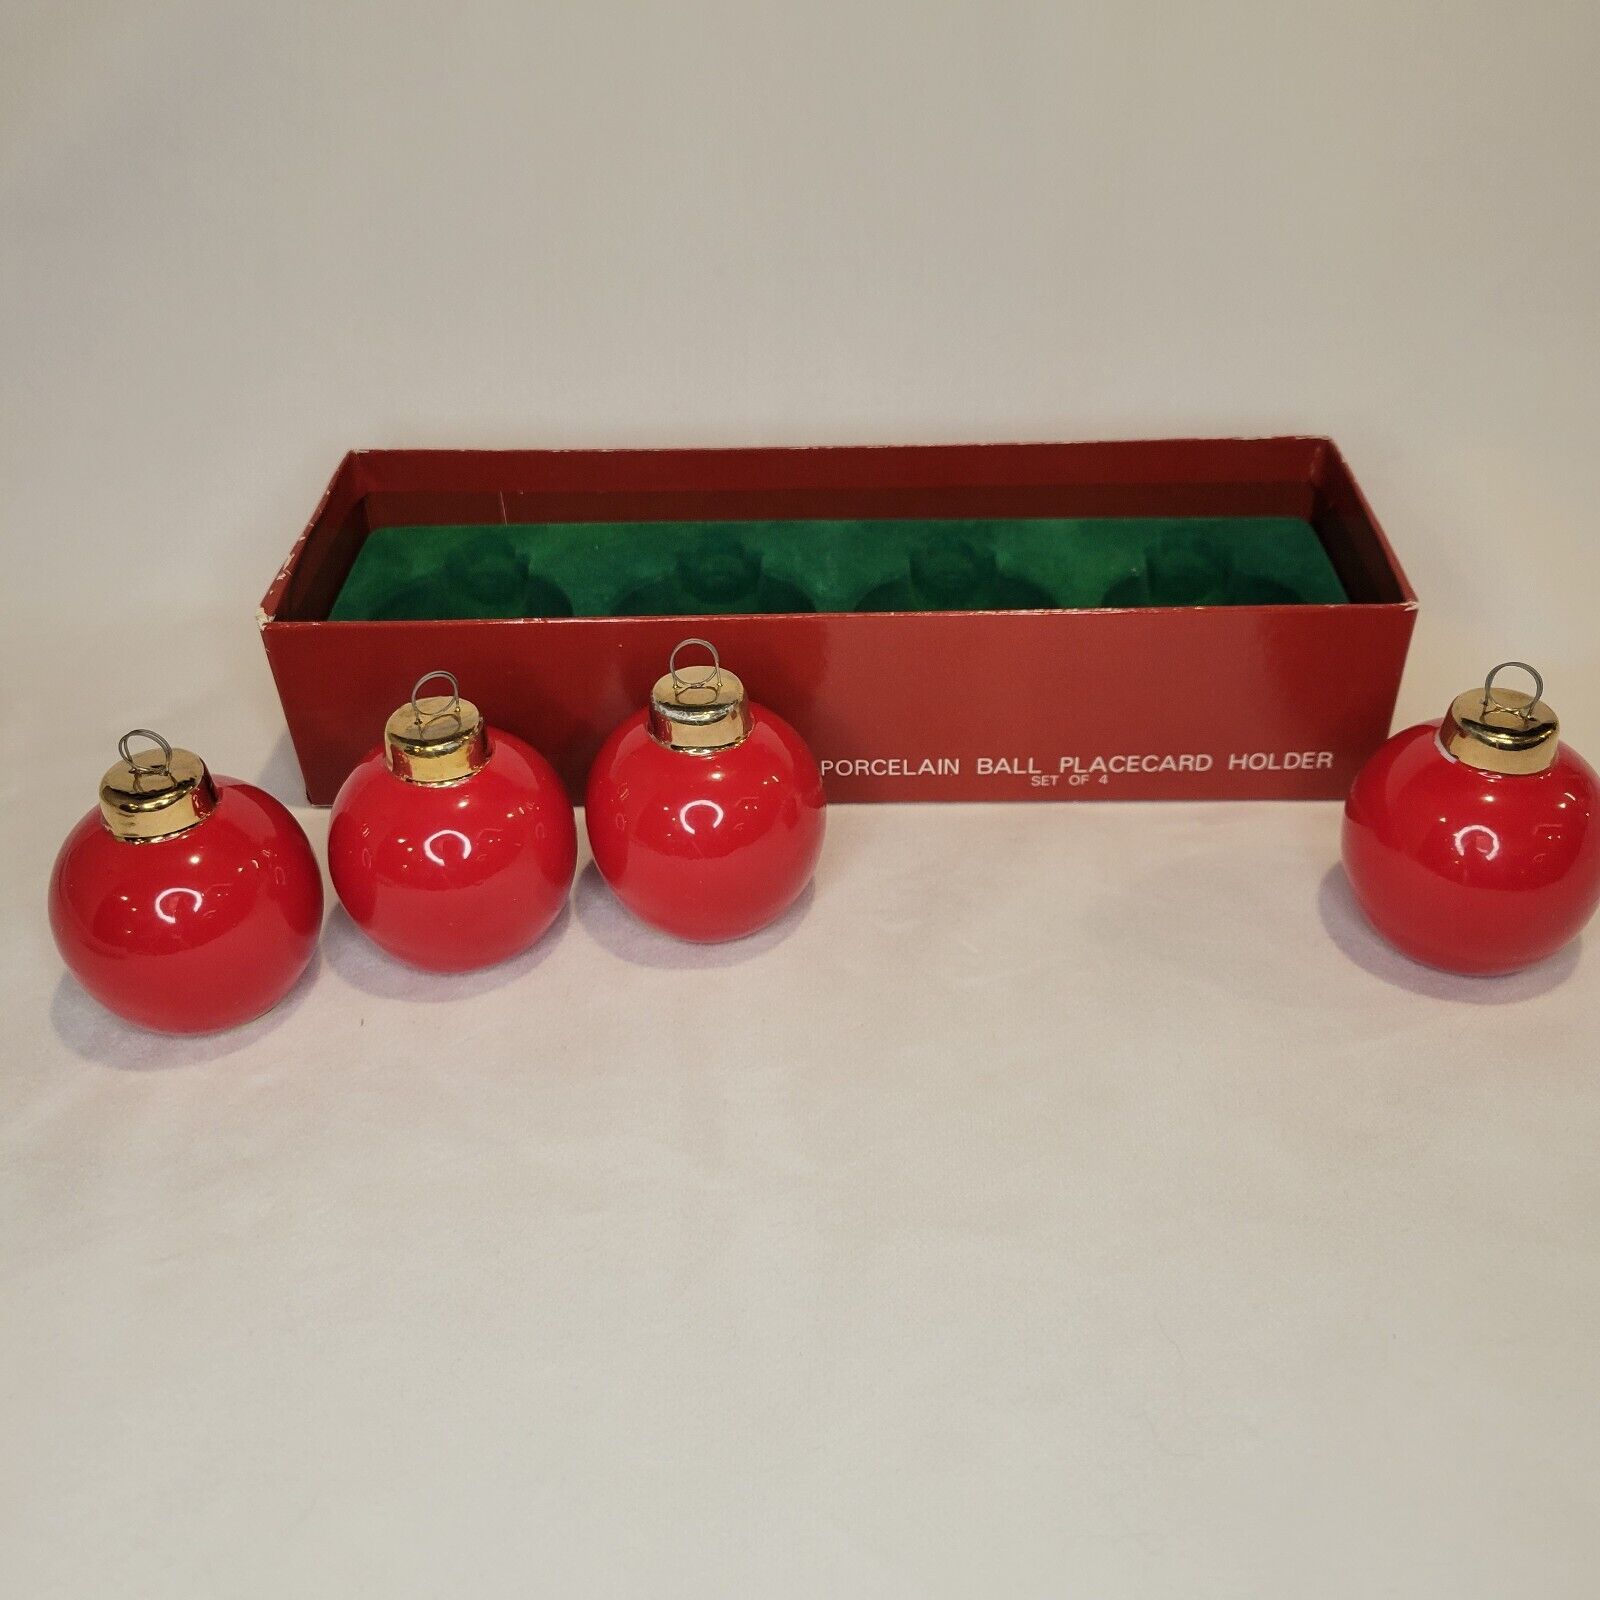 Dept 56 Porcelain Placecard Holder Ornaments 14k Gold Trim Set of 4 Christmas